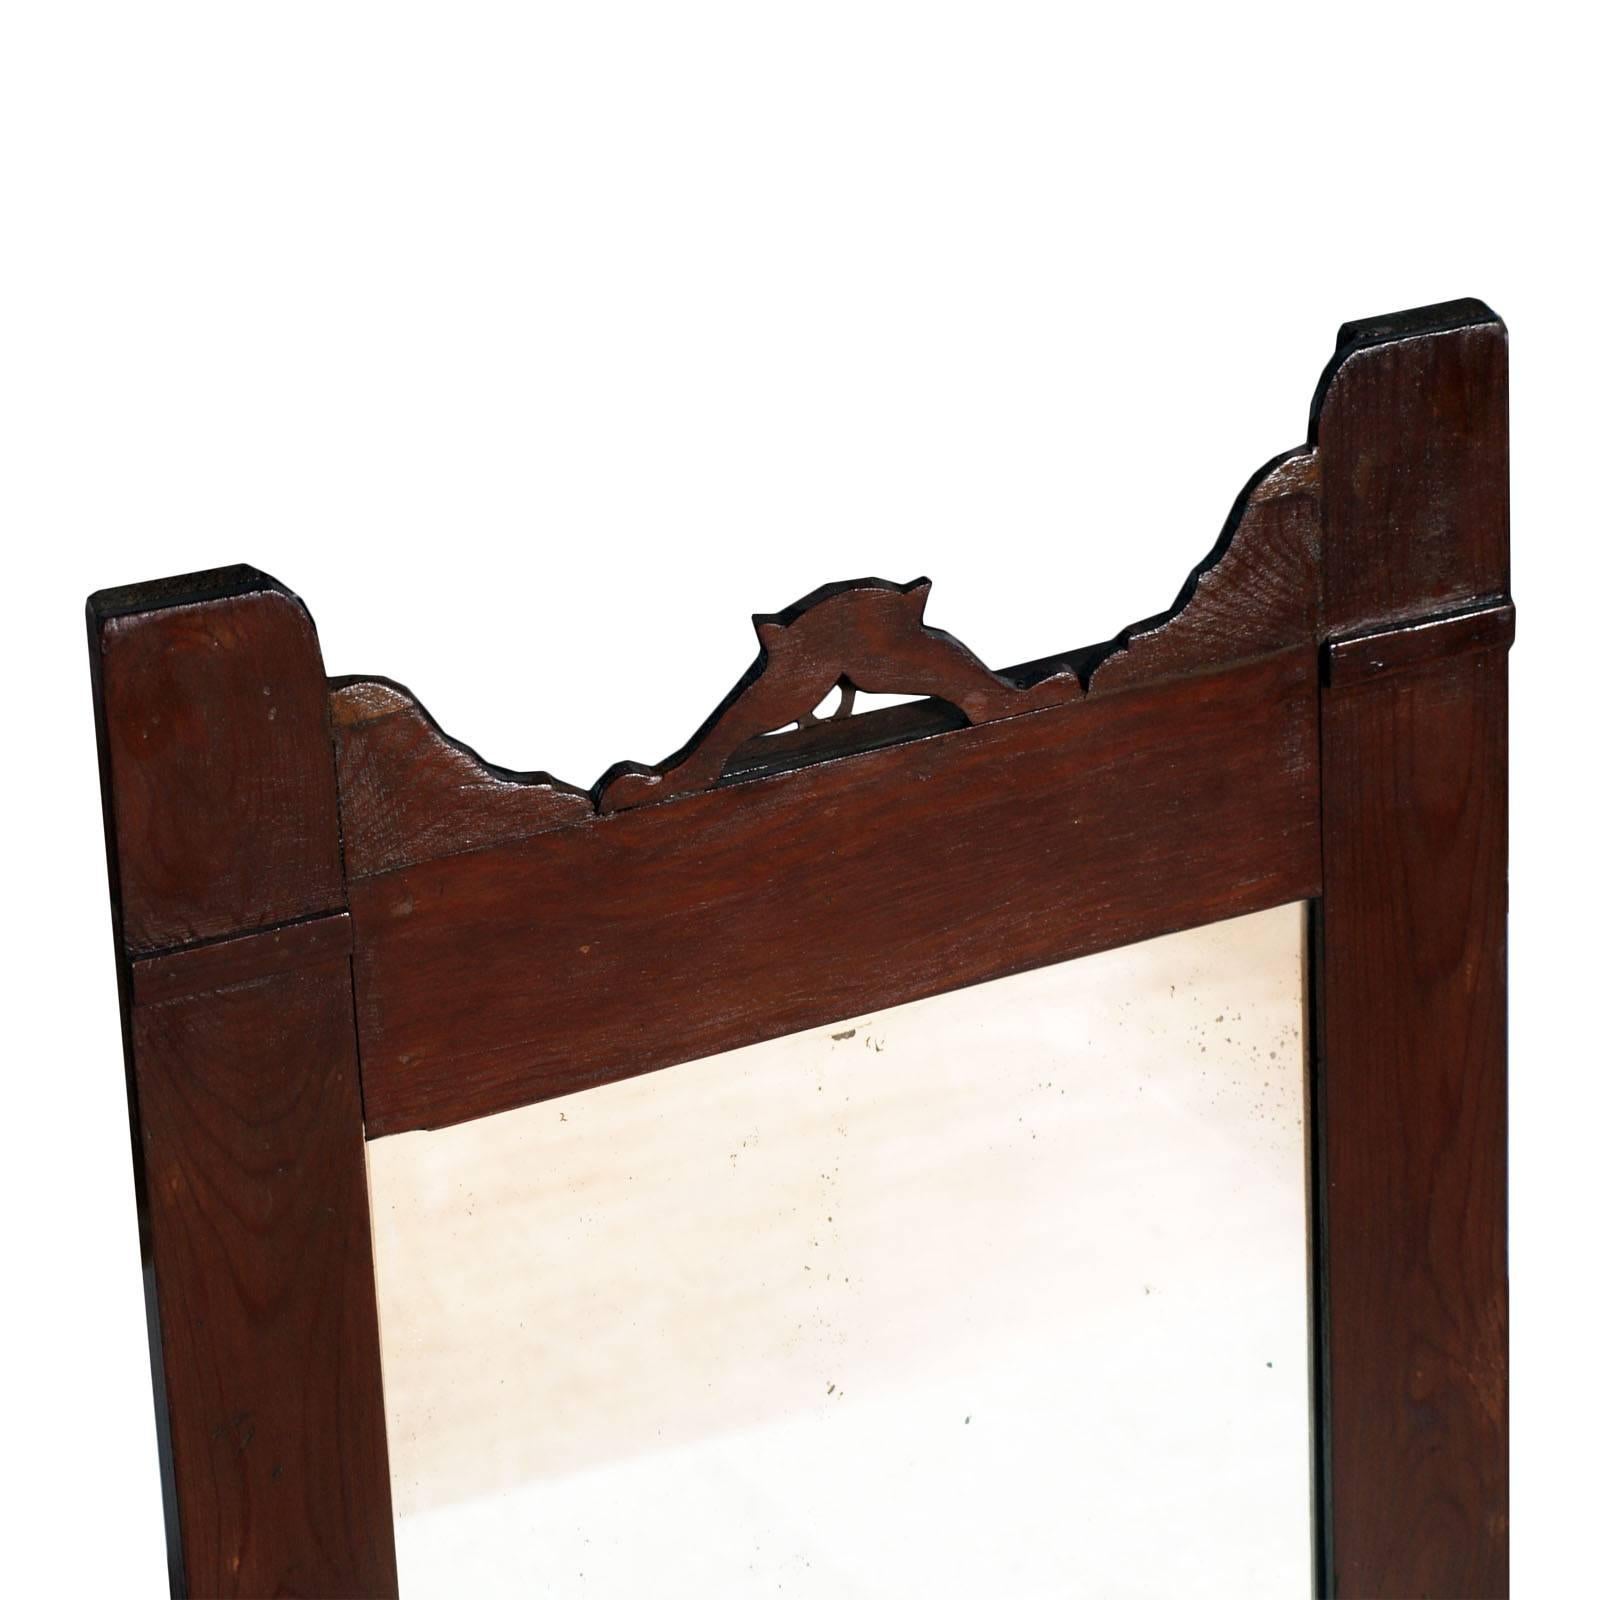 Jugendstil-Spiegel aus Nussbaum, Ende des 19. Jahrhunderts, restauriert und gewachst

Maße cm: H 70, B 45, T 4.